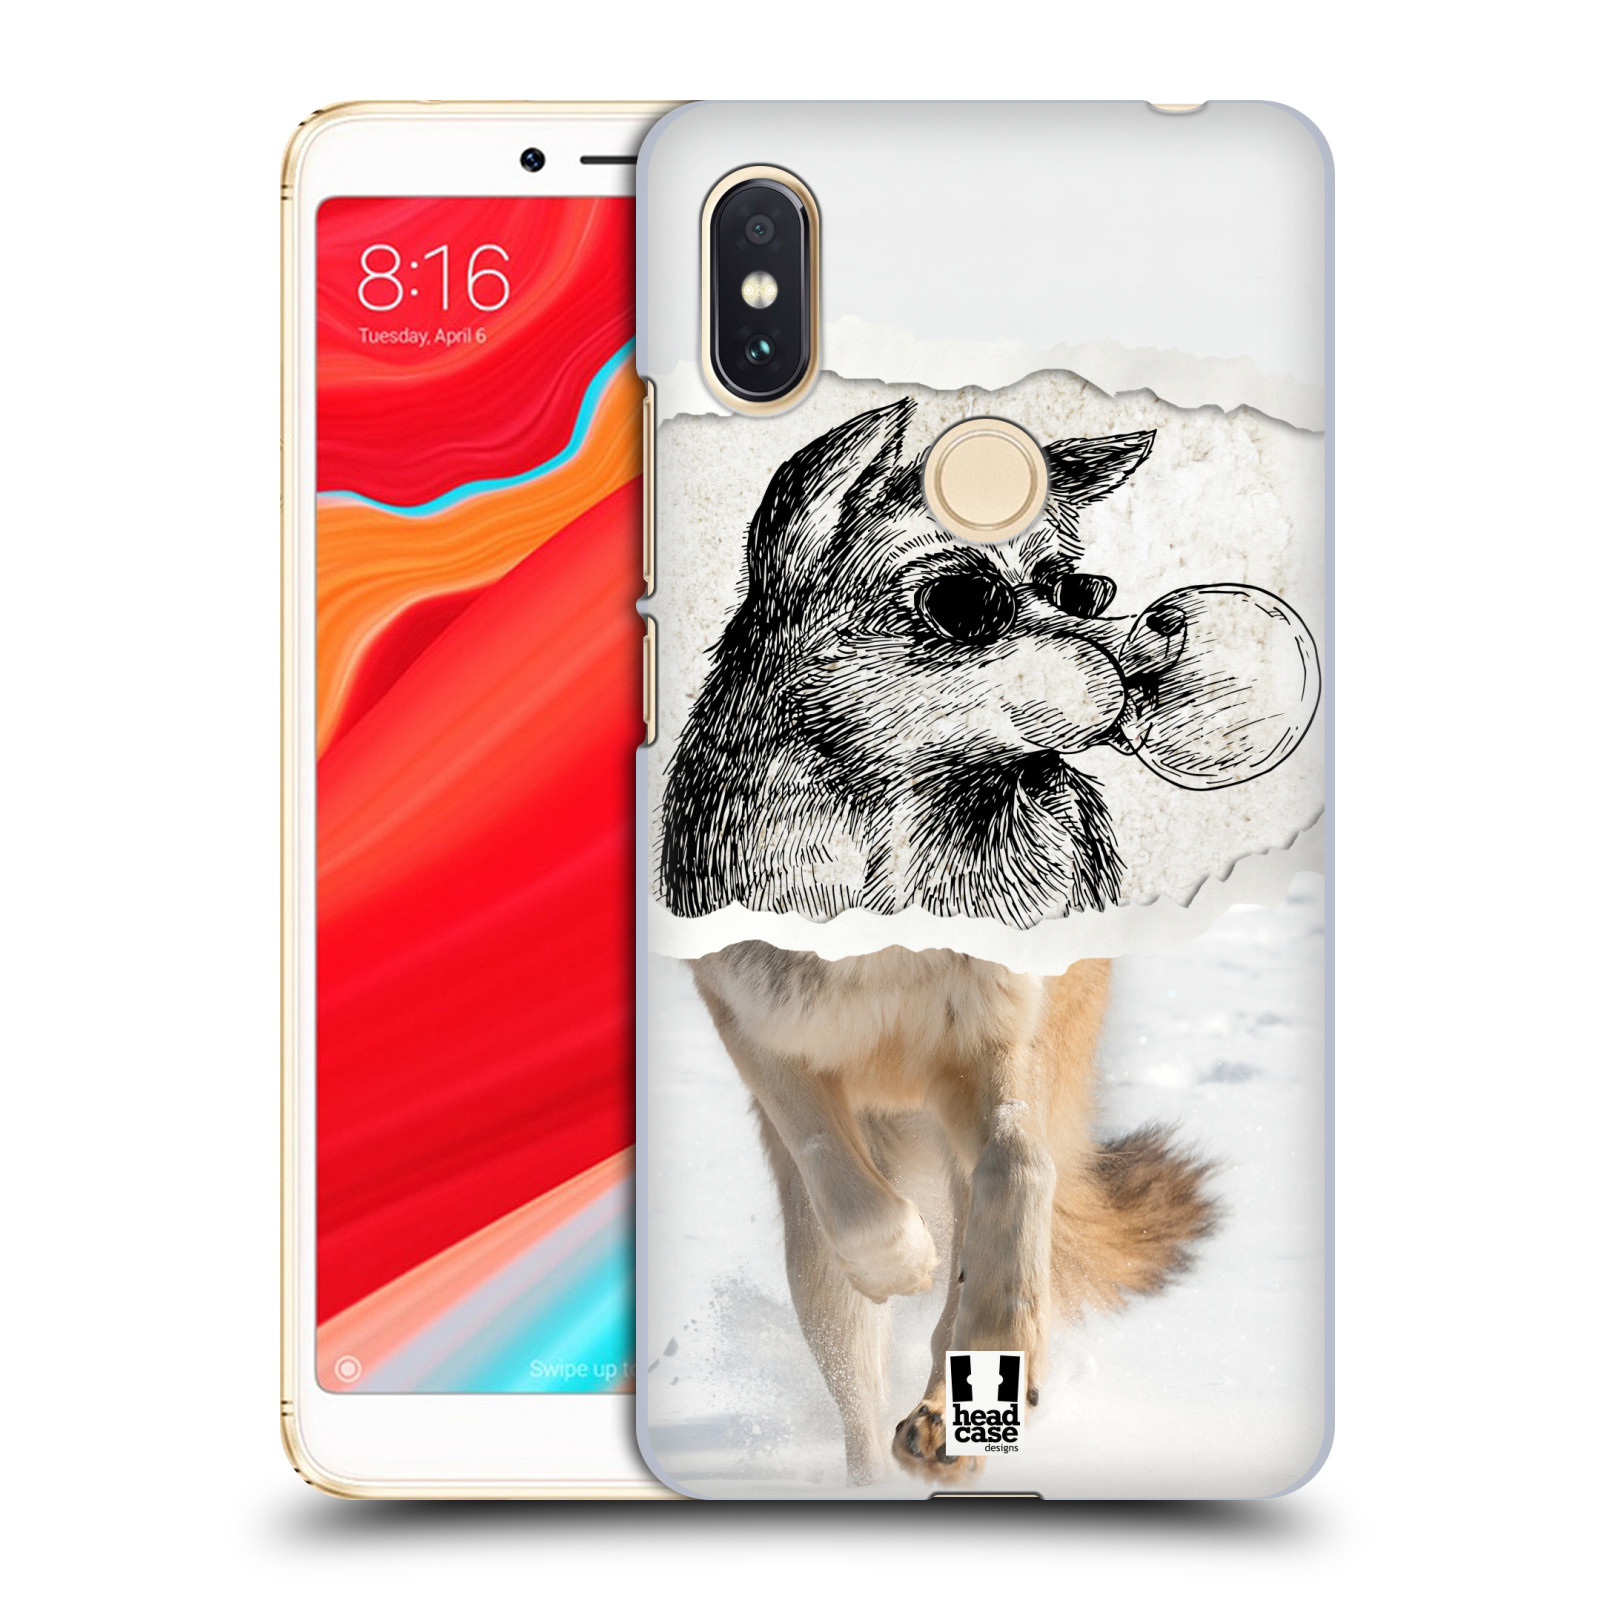 HEAD CASE plastový obal na mobil Xiaomi Redmi S2 vzor zvířata koláž vlk pohodář